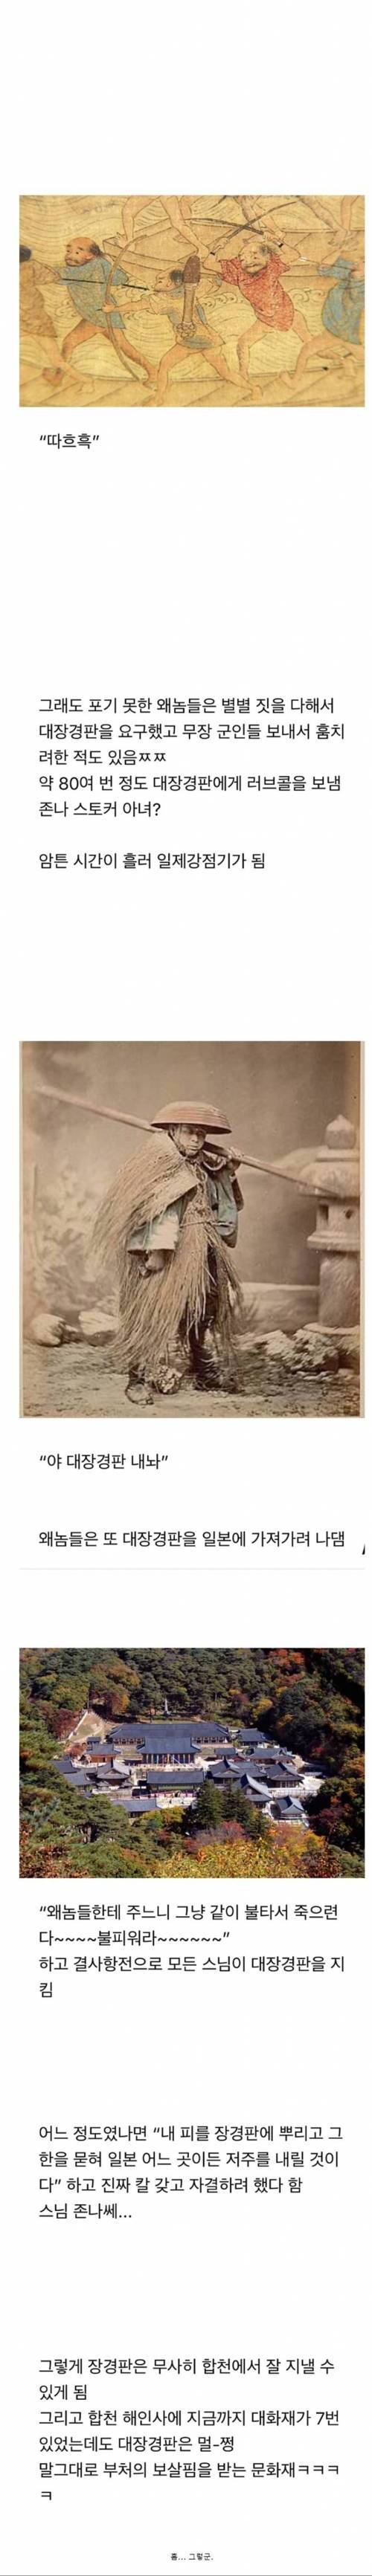 일본놈들이 조선시대때부터 욕심냈던 우리 문화재.jpg